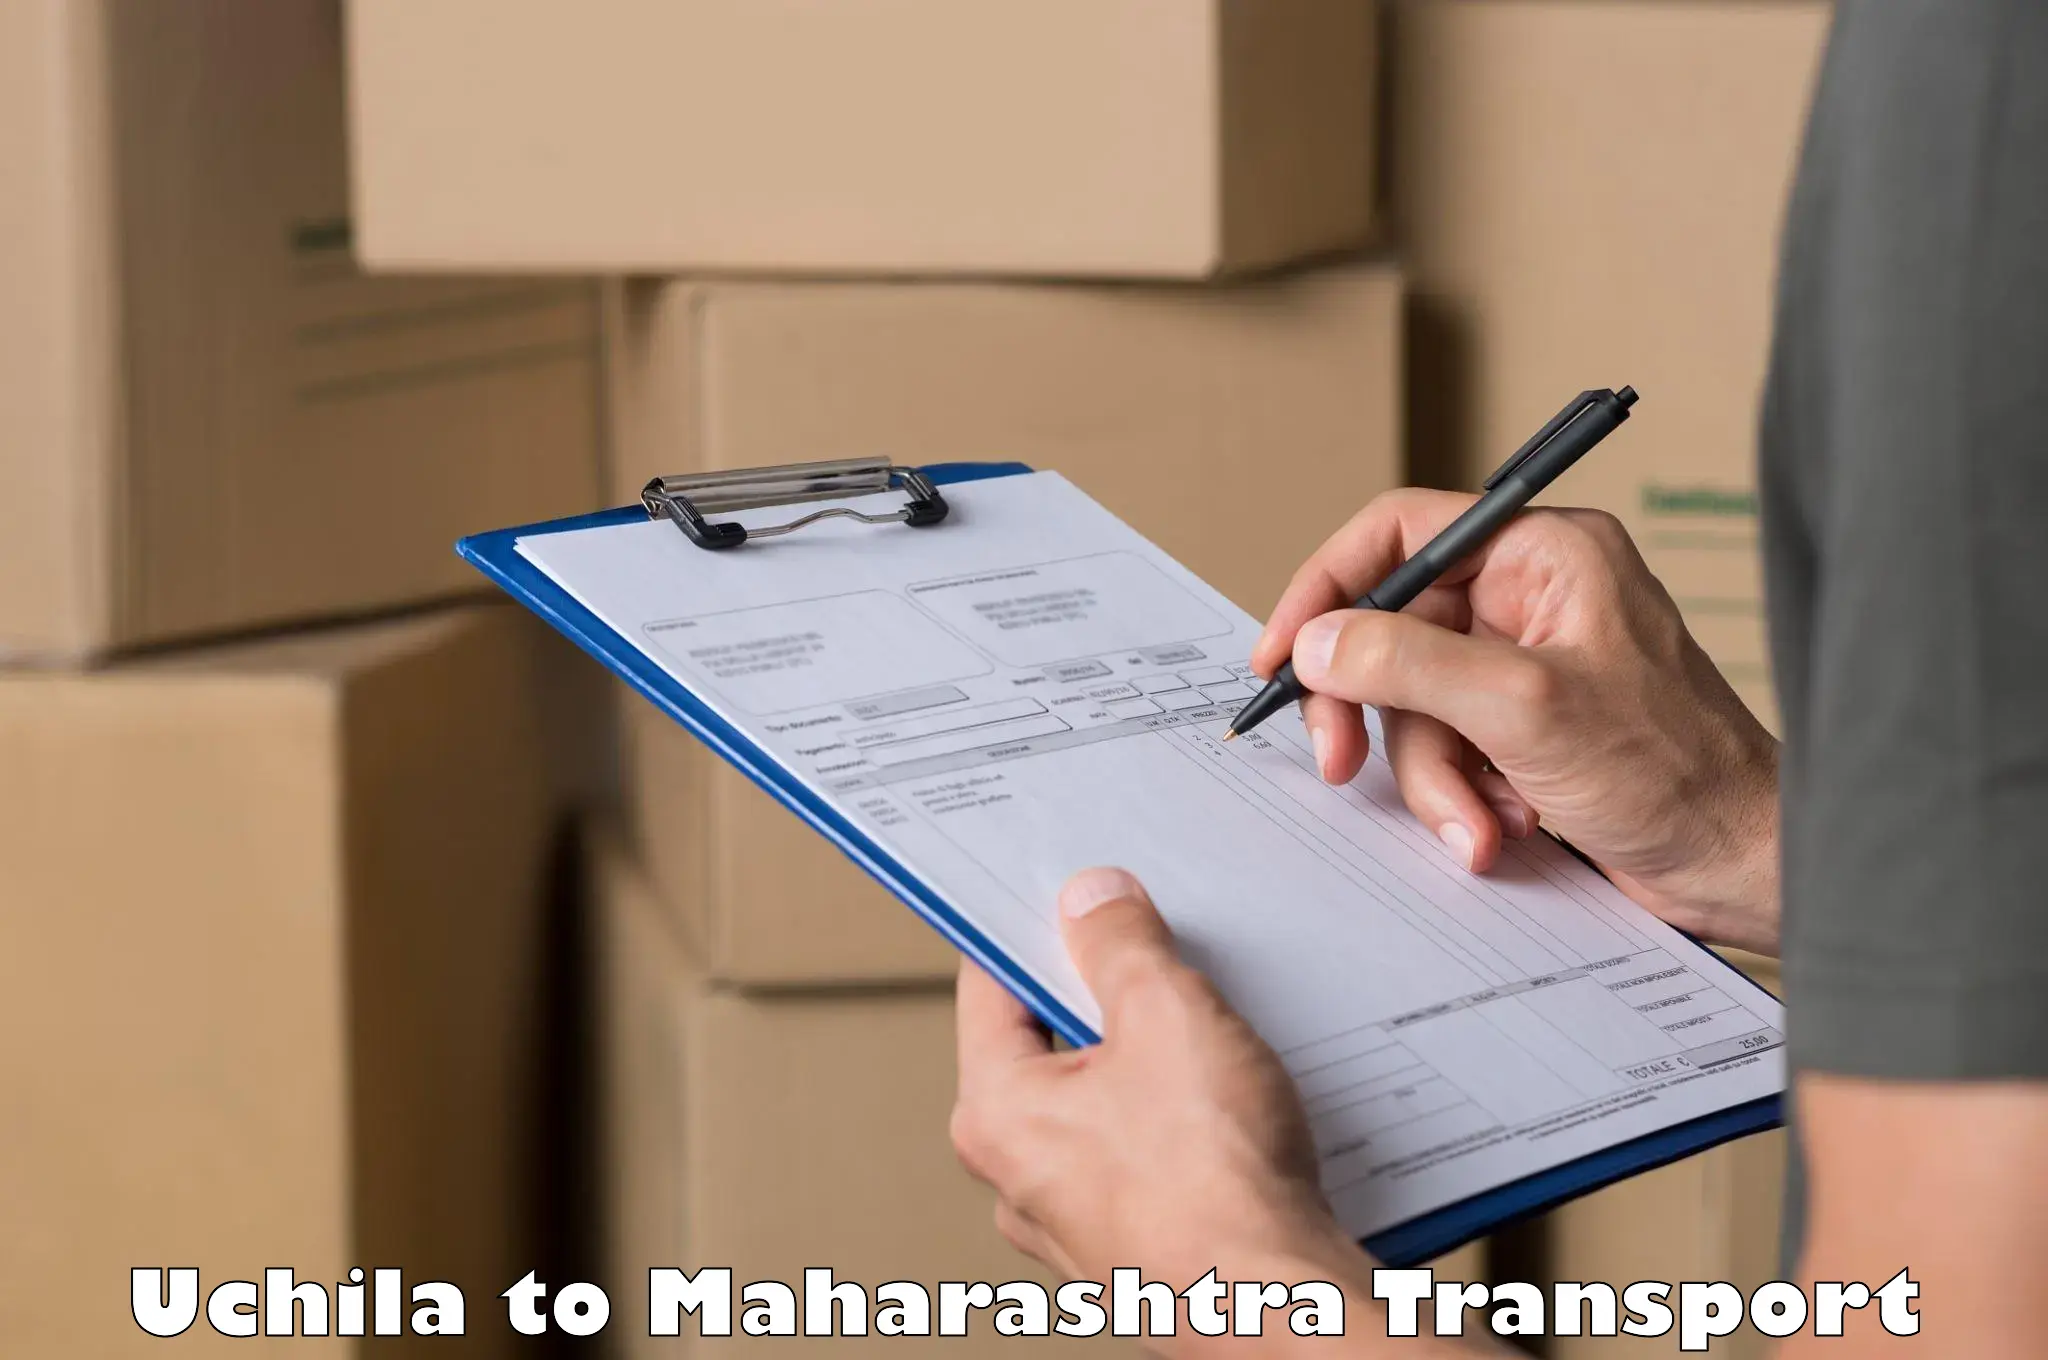 India truck logistics services Uchila to Washim